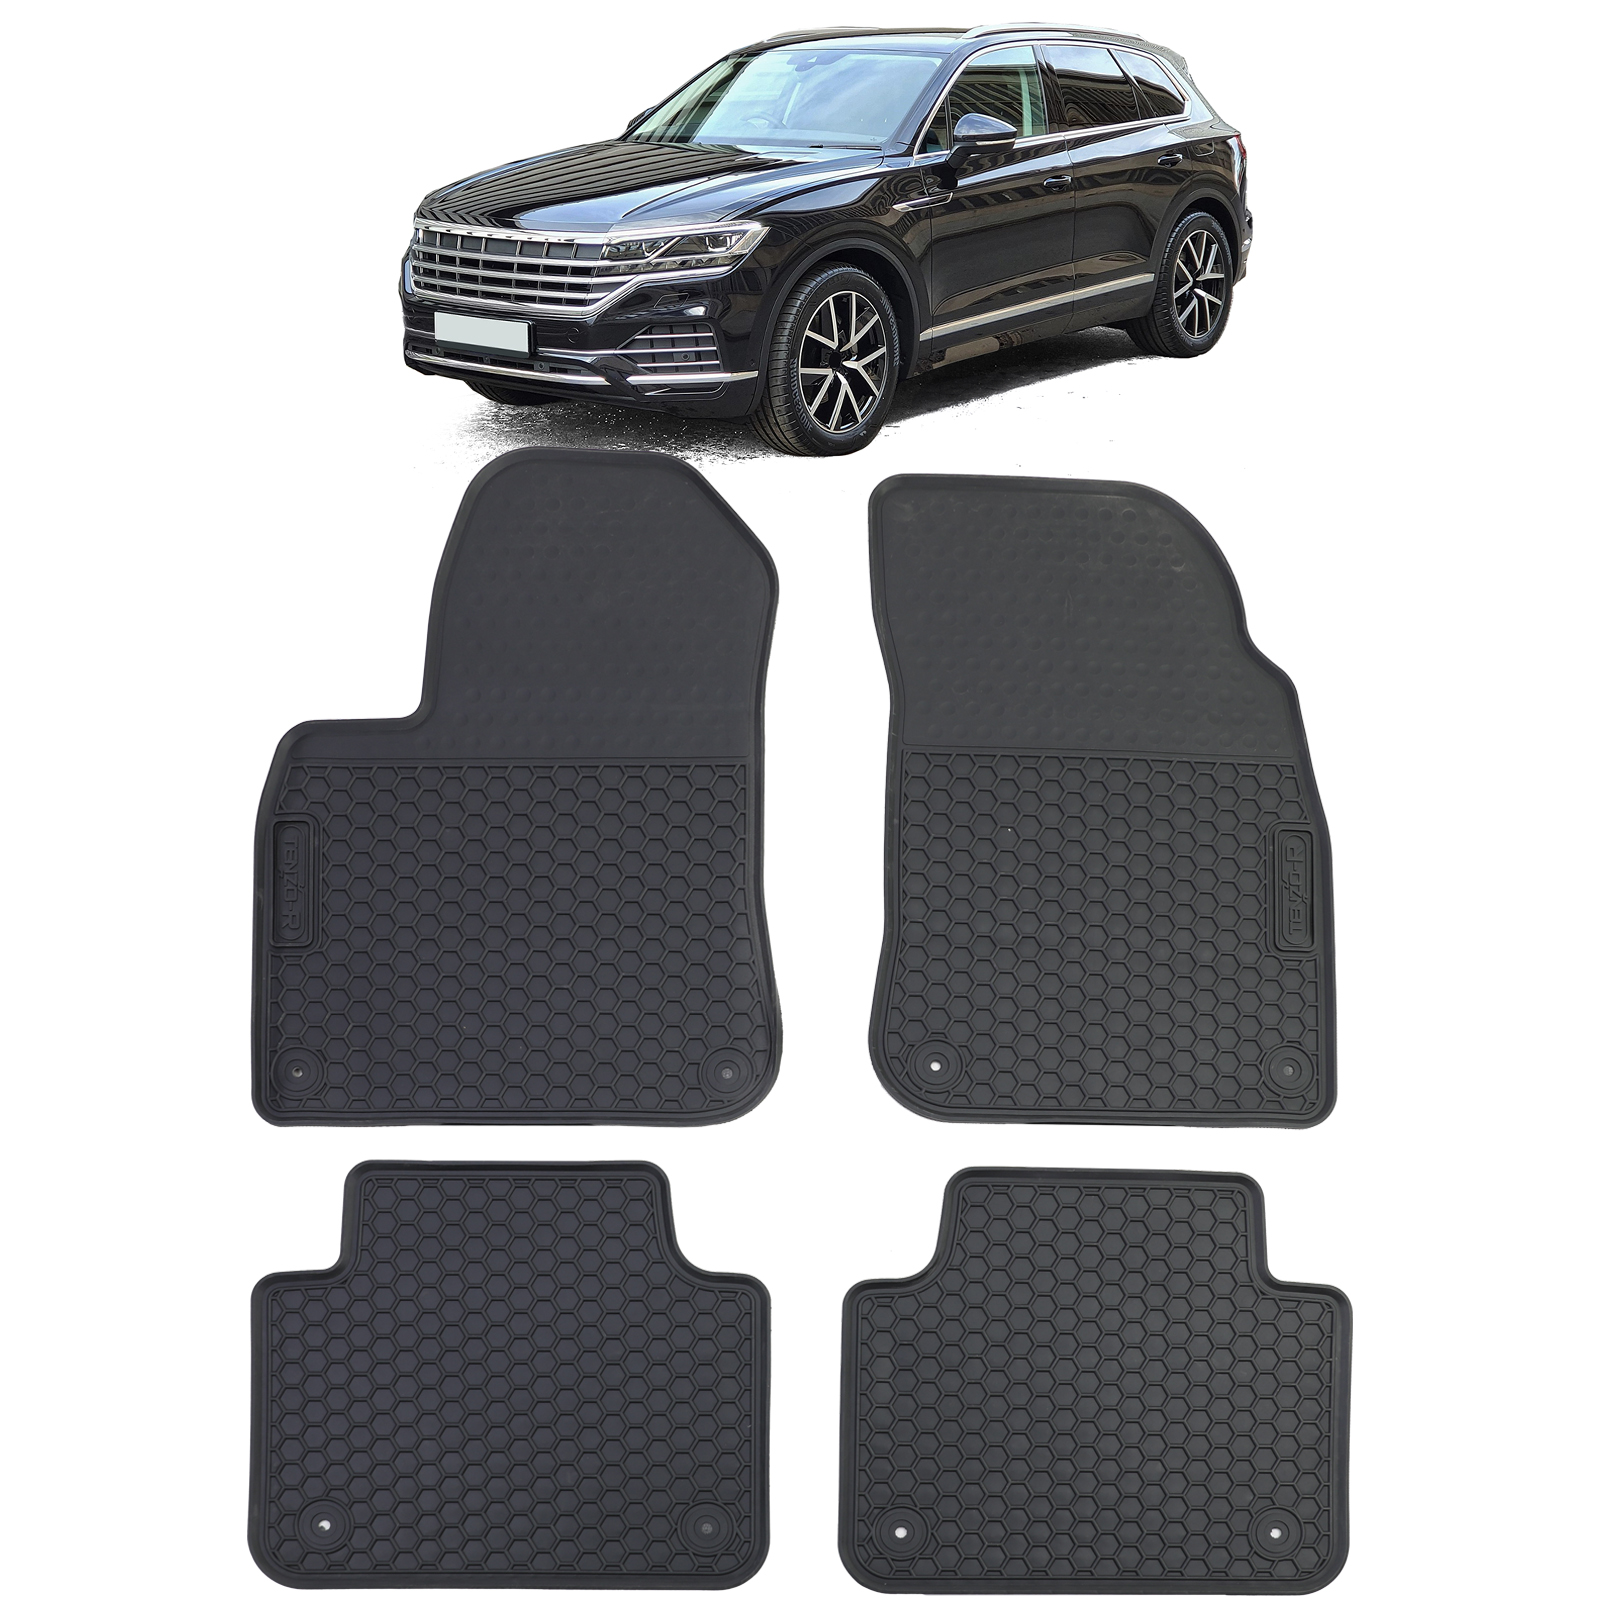 Auto Gummi Fußmatten Schwarz Premium Set für VW Touareg III CR ab 18 kaufen